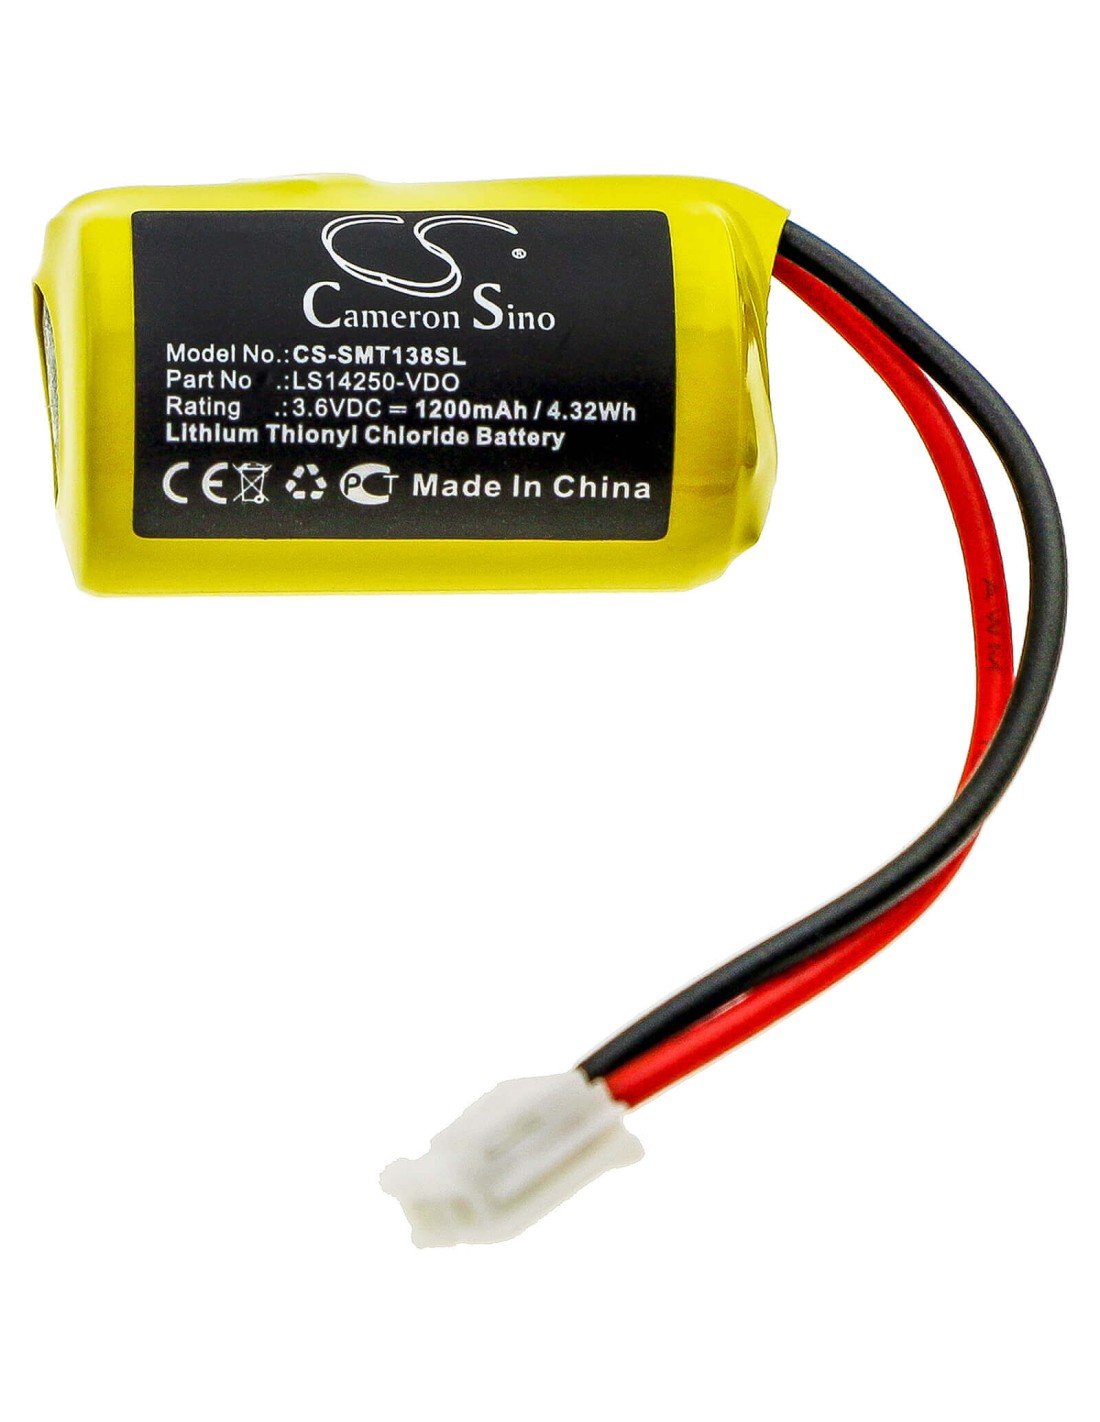 Battery for Siemens, Vdo Digital Tachograph Dtco 1381 3.6V, 1200mAh - 4.32Wh